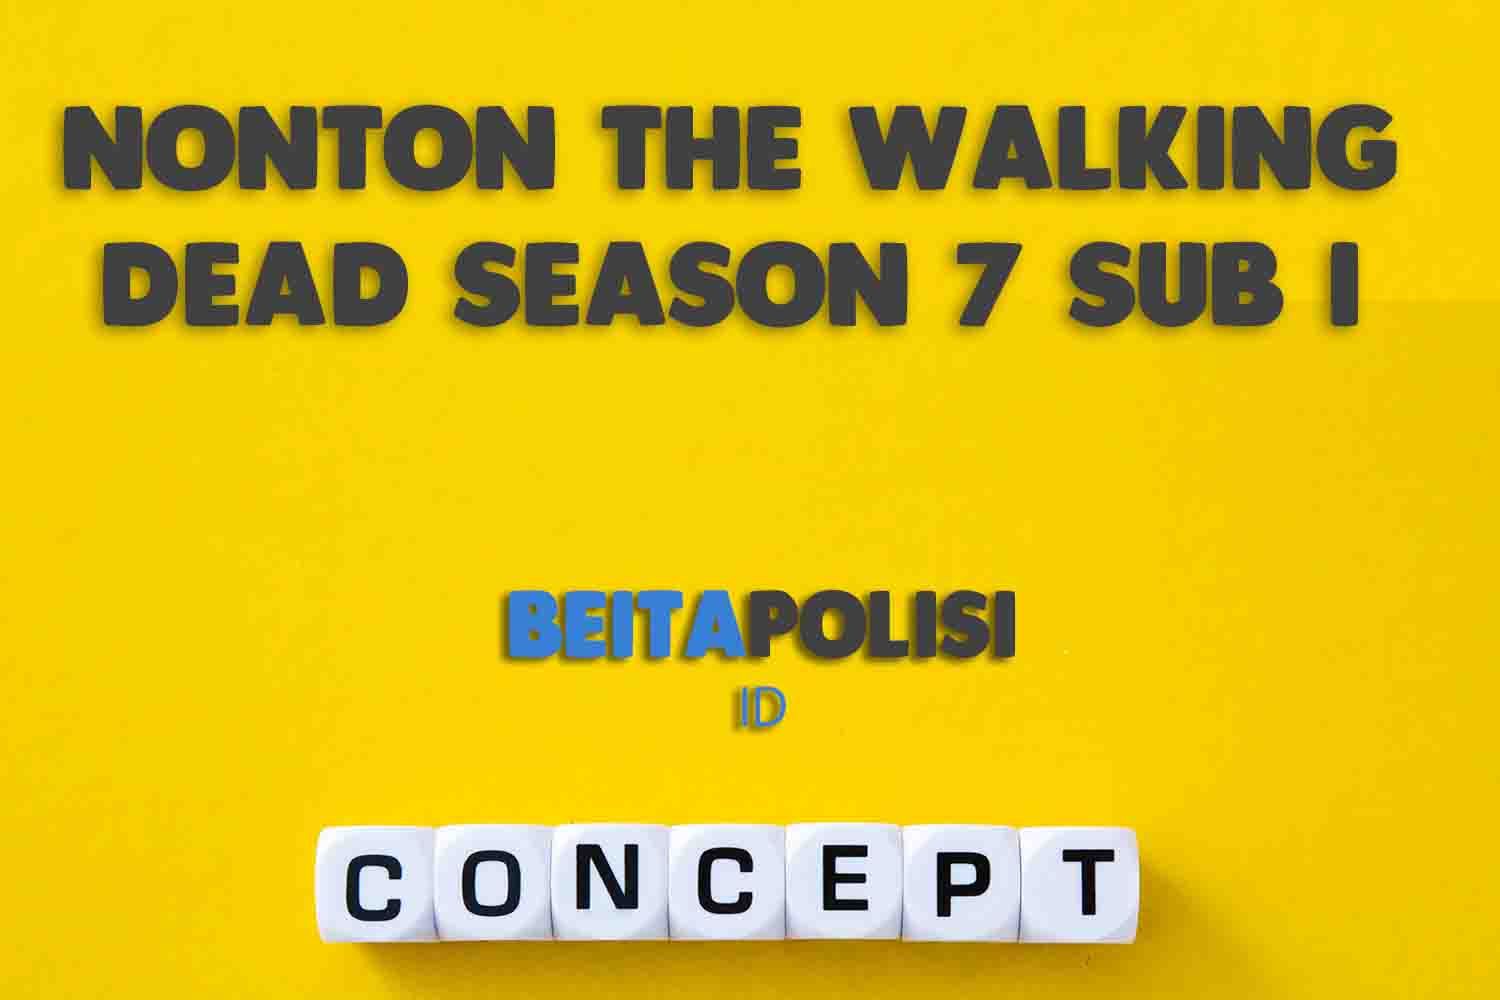 Nonton The Walking Dead Season 7 Sub I